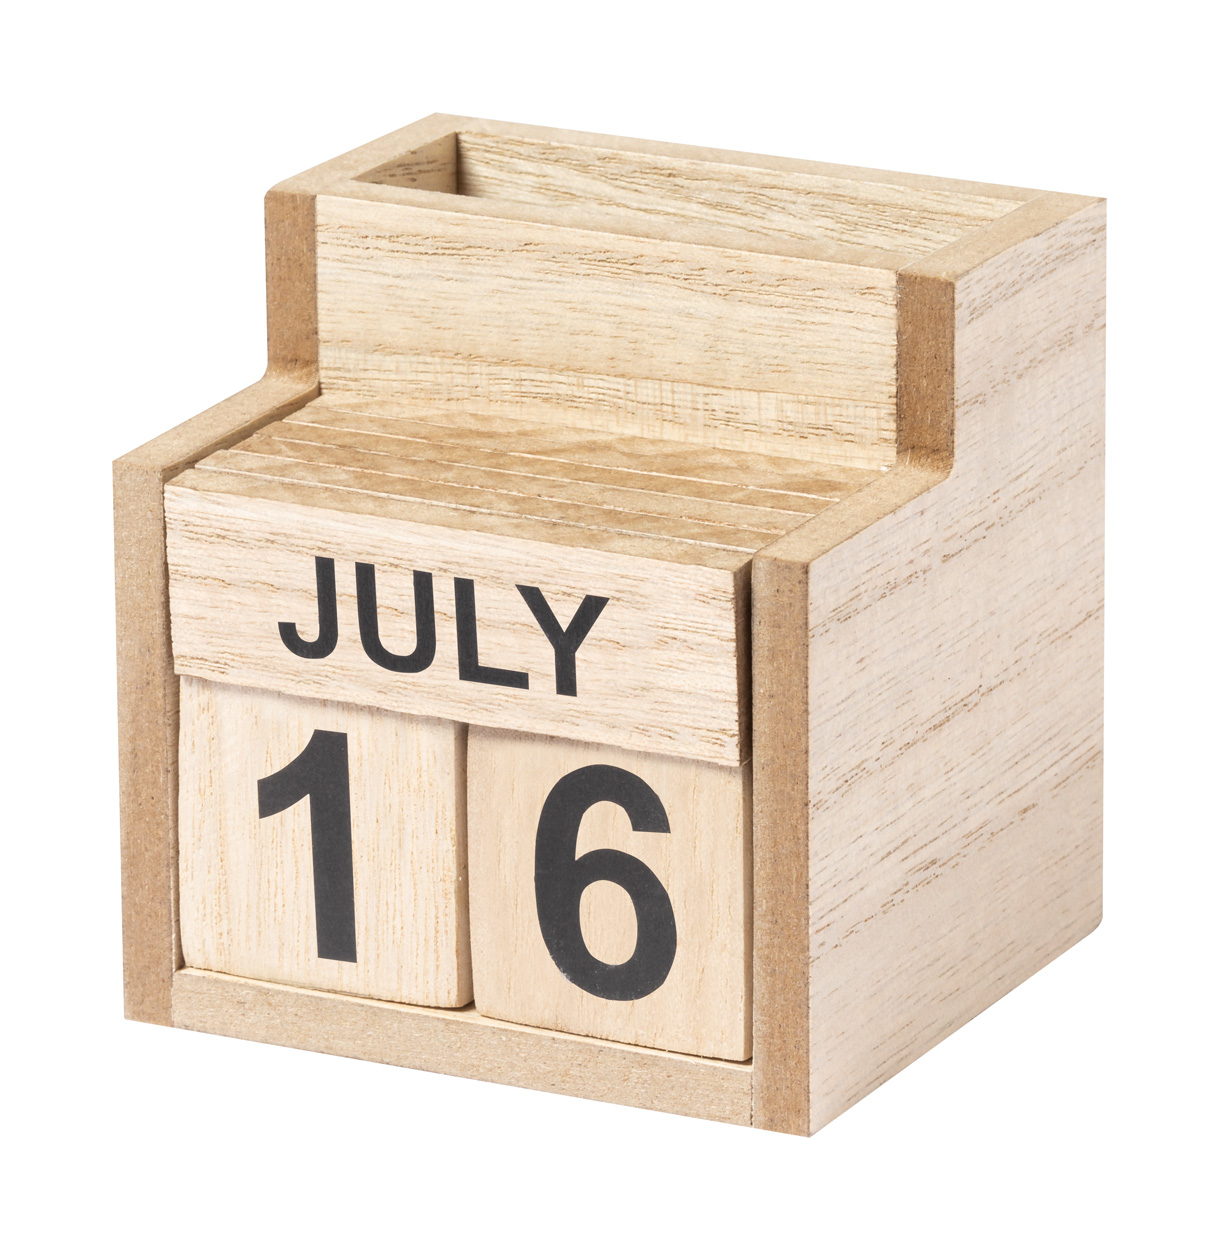 Wooden perpetual calendar LAOREK with mobile phone holder - natural